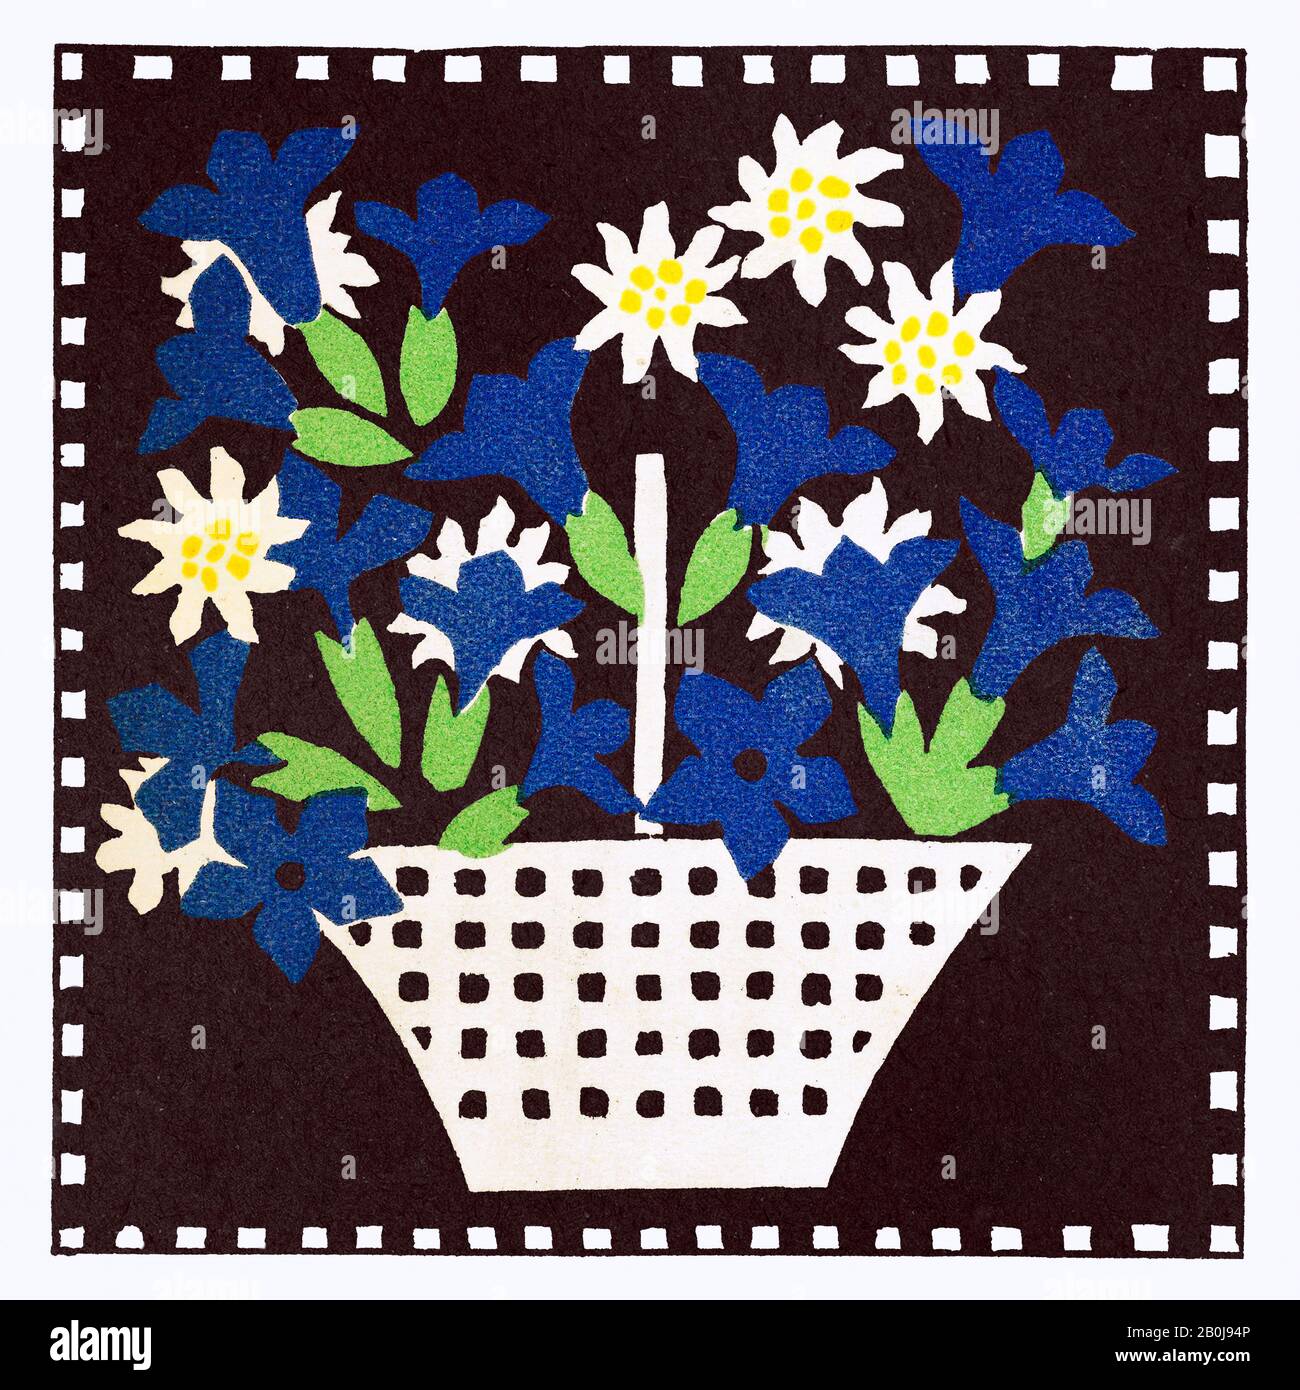 Leopoldine Kolbe Basket Of Flowers Foto Stock